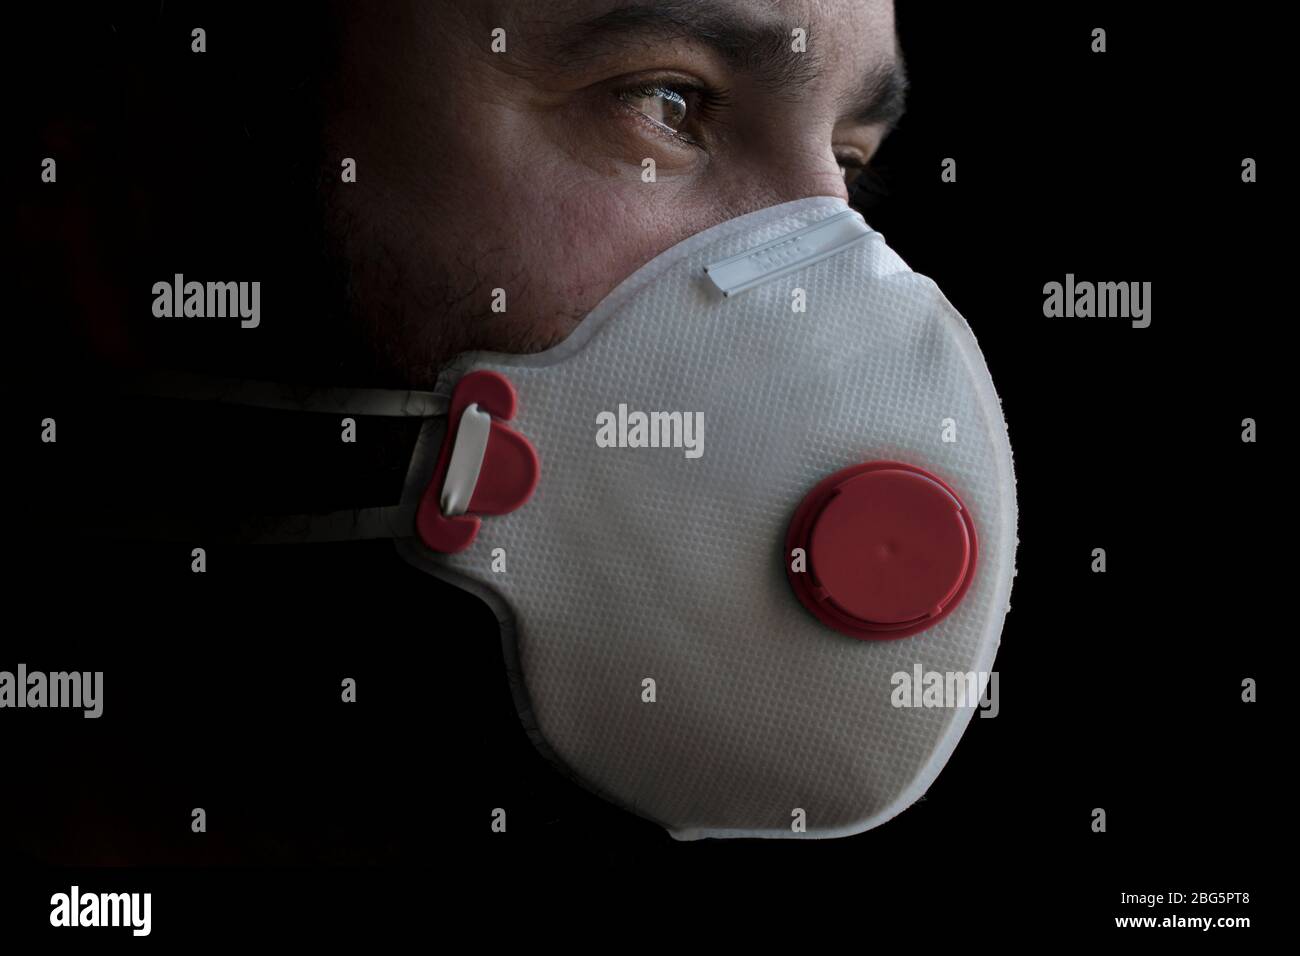 Gesichtsmaske ffp3 (persönliche Schutzausrüstung PSA) für Pandemie, Krankheiten, Coronavirus COVID-19 und Verschmutzung. Ein besorgter Mann, der eine Einwegmaske trägt. Stockfoto